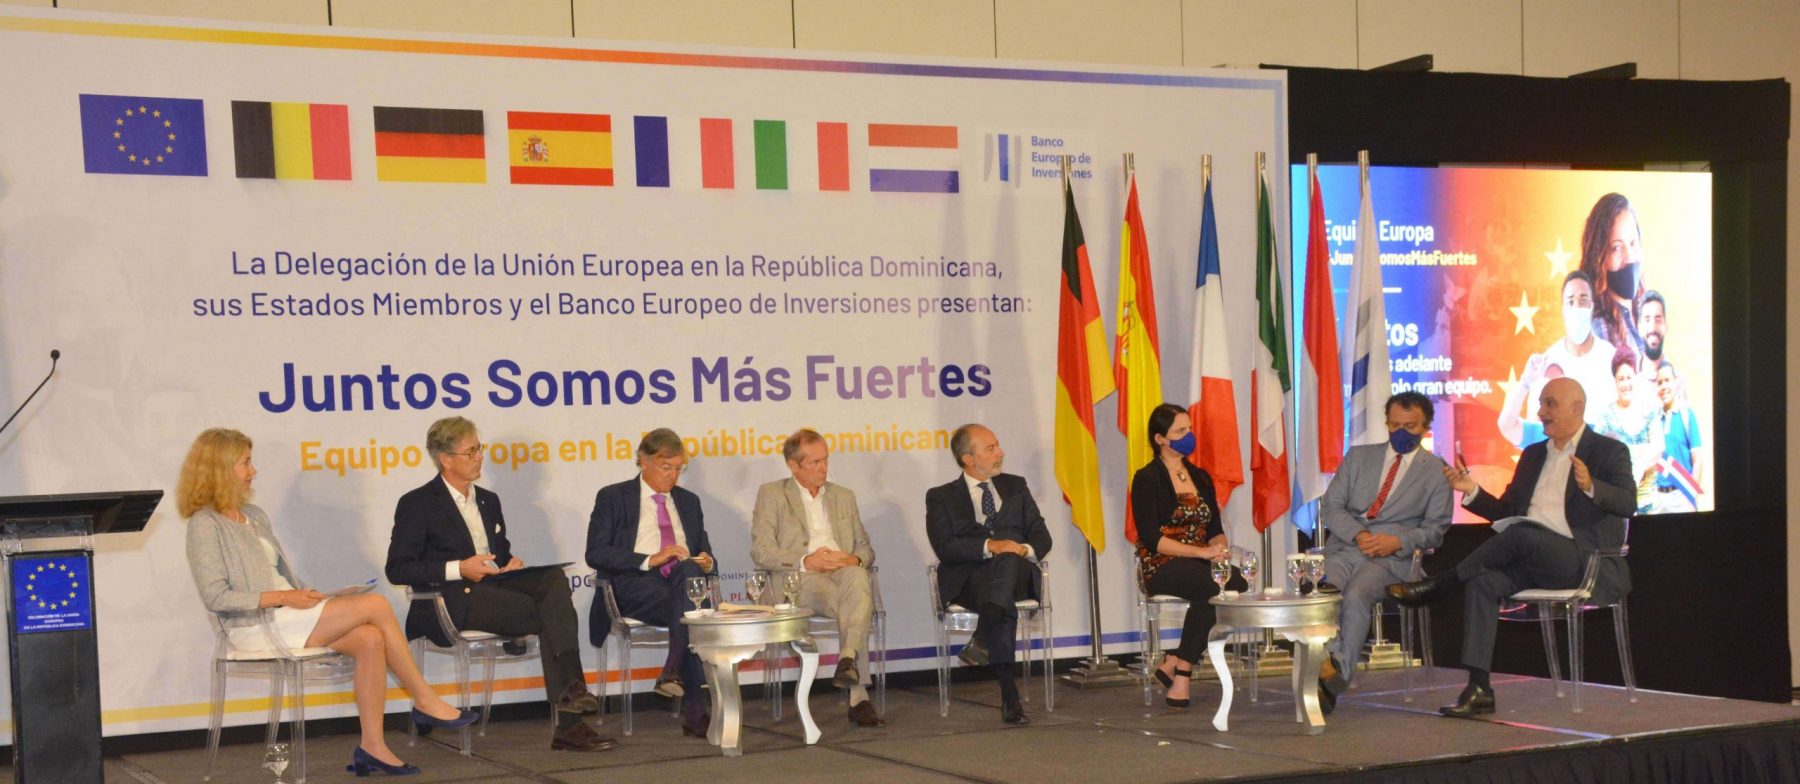 A la derecha, Pavel Isa Contreras, viceministro de Planificación e Inversión Pública del ministerio de Economía, Planificación y Desarrollo junto a los integrantes del Equipo Europa en la República Dominicana.